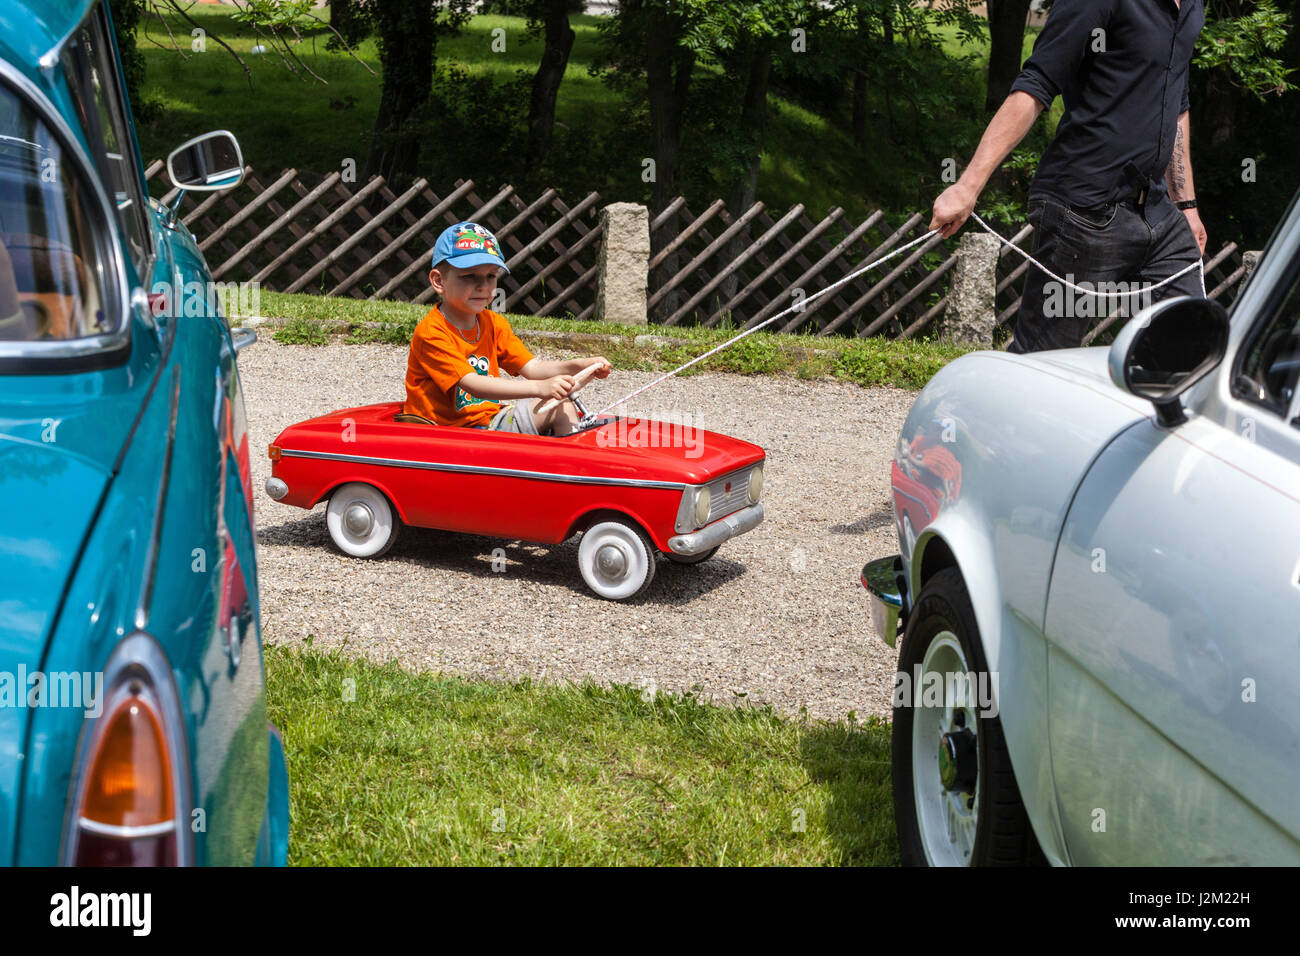 Un enfant dans une voiture à pédale jouet acheté à un ancien combattant, République Tchèque, Europe Banque D'Images